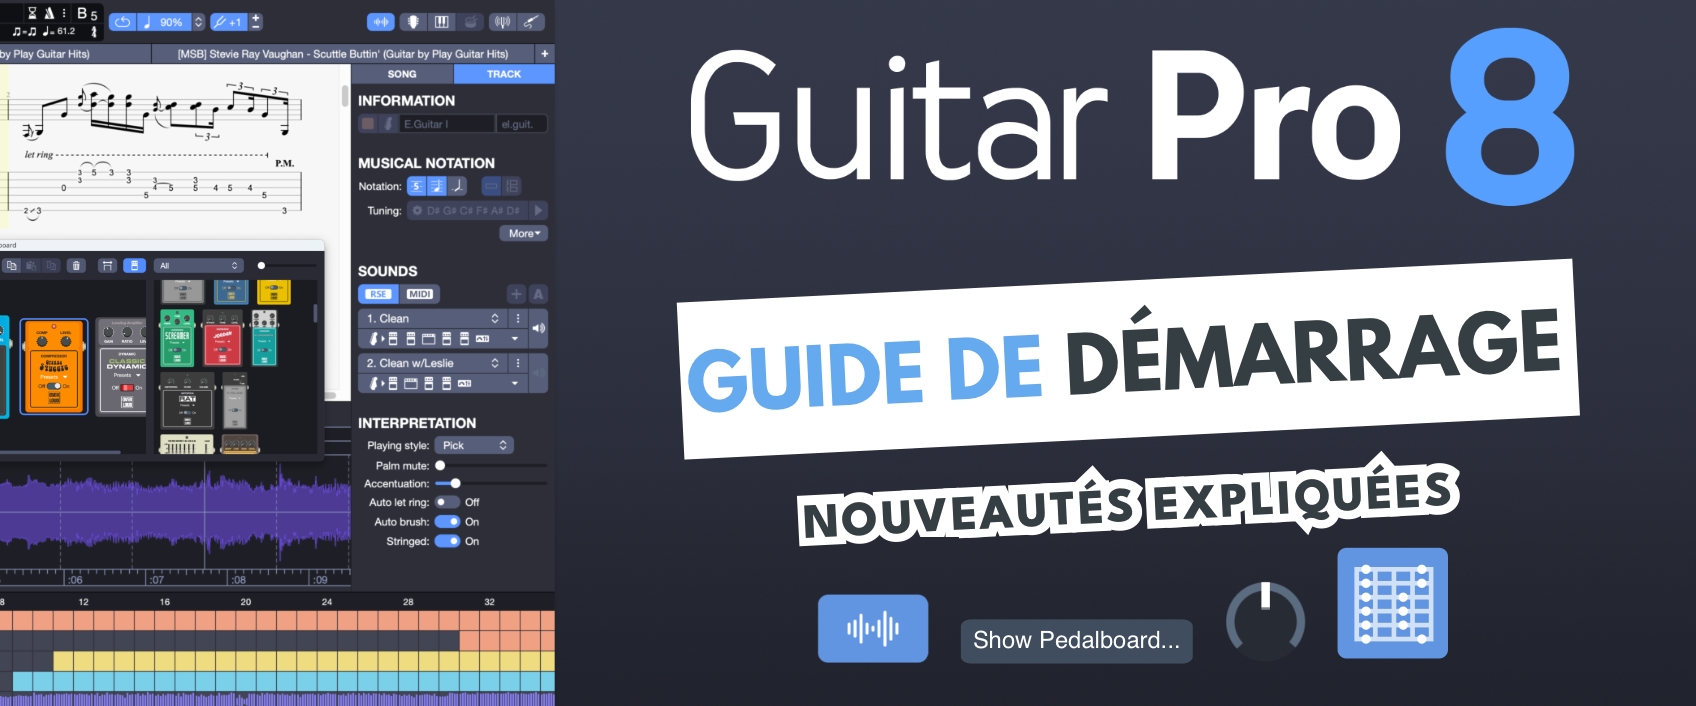 Guitar Pro 8: téléchargez le guide de démarrage - 2022 - Guitar Pro Blog -  Arobas Music